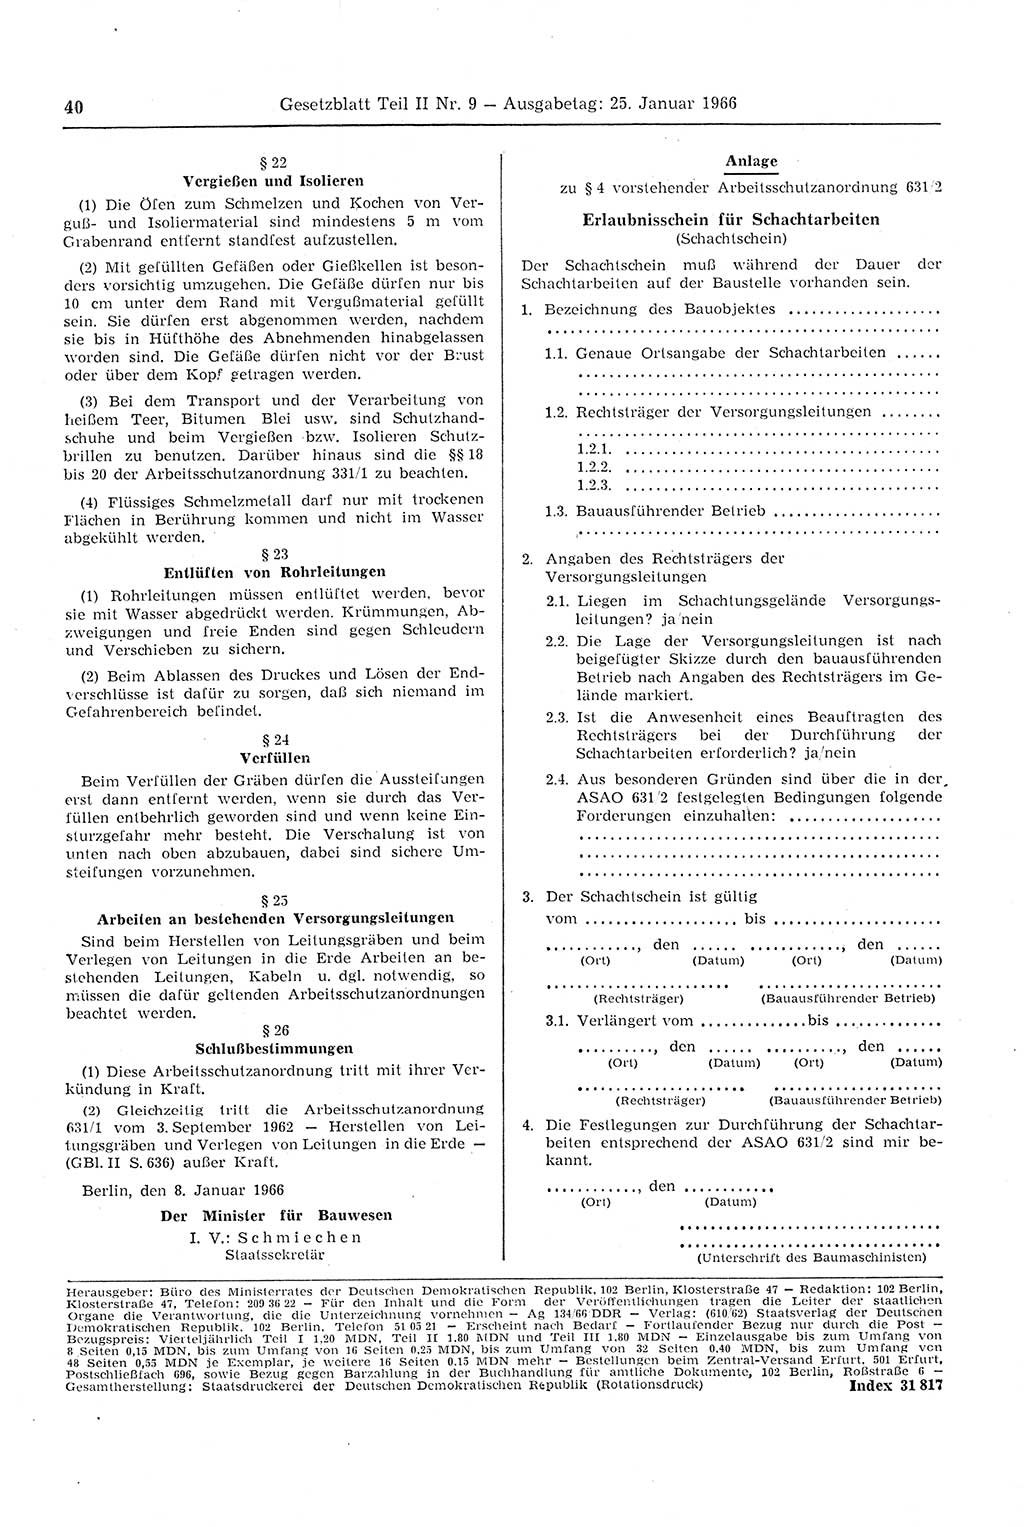 Gesetzblatt (GBl.) der Deutschen Demokratischen Republik (DDR) Teil ⅠⅠ 1966, Seite 40 (GBl. DDR ⅠⅠ 1966, S. 40)